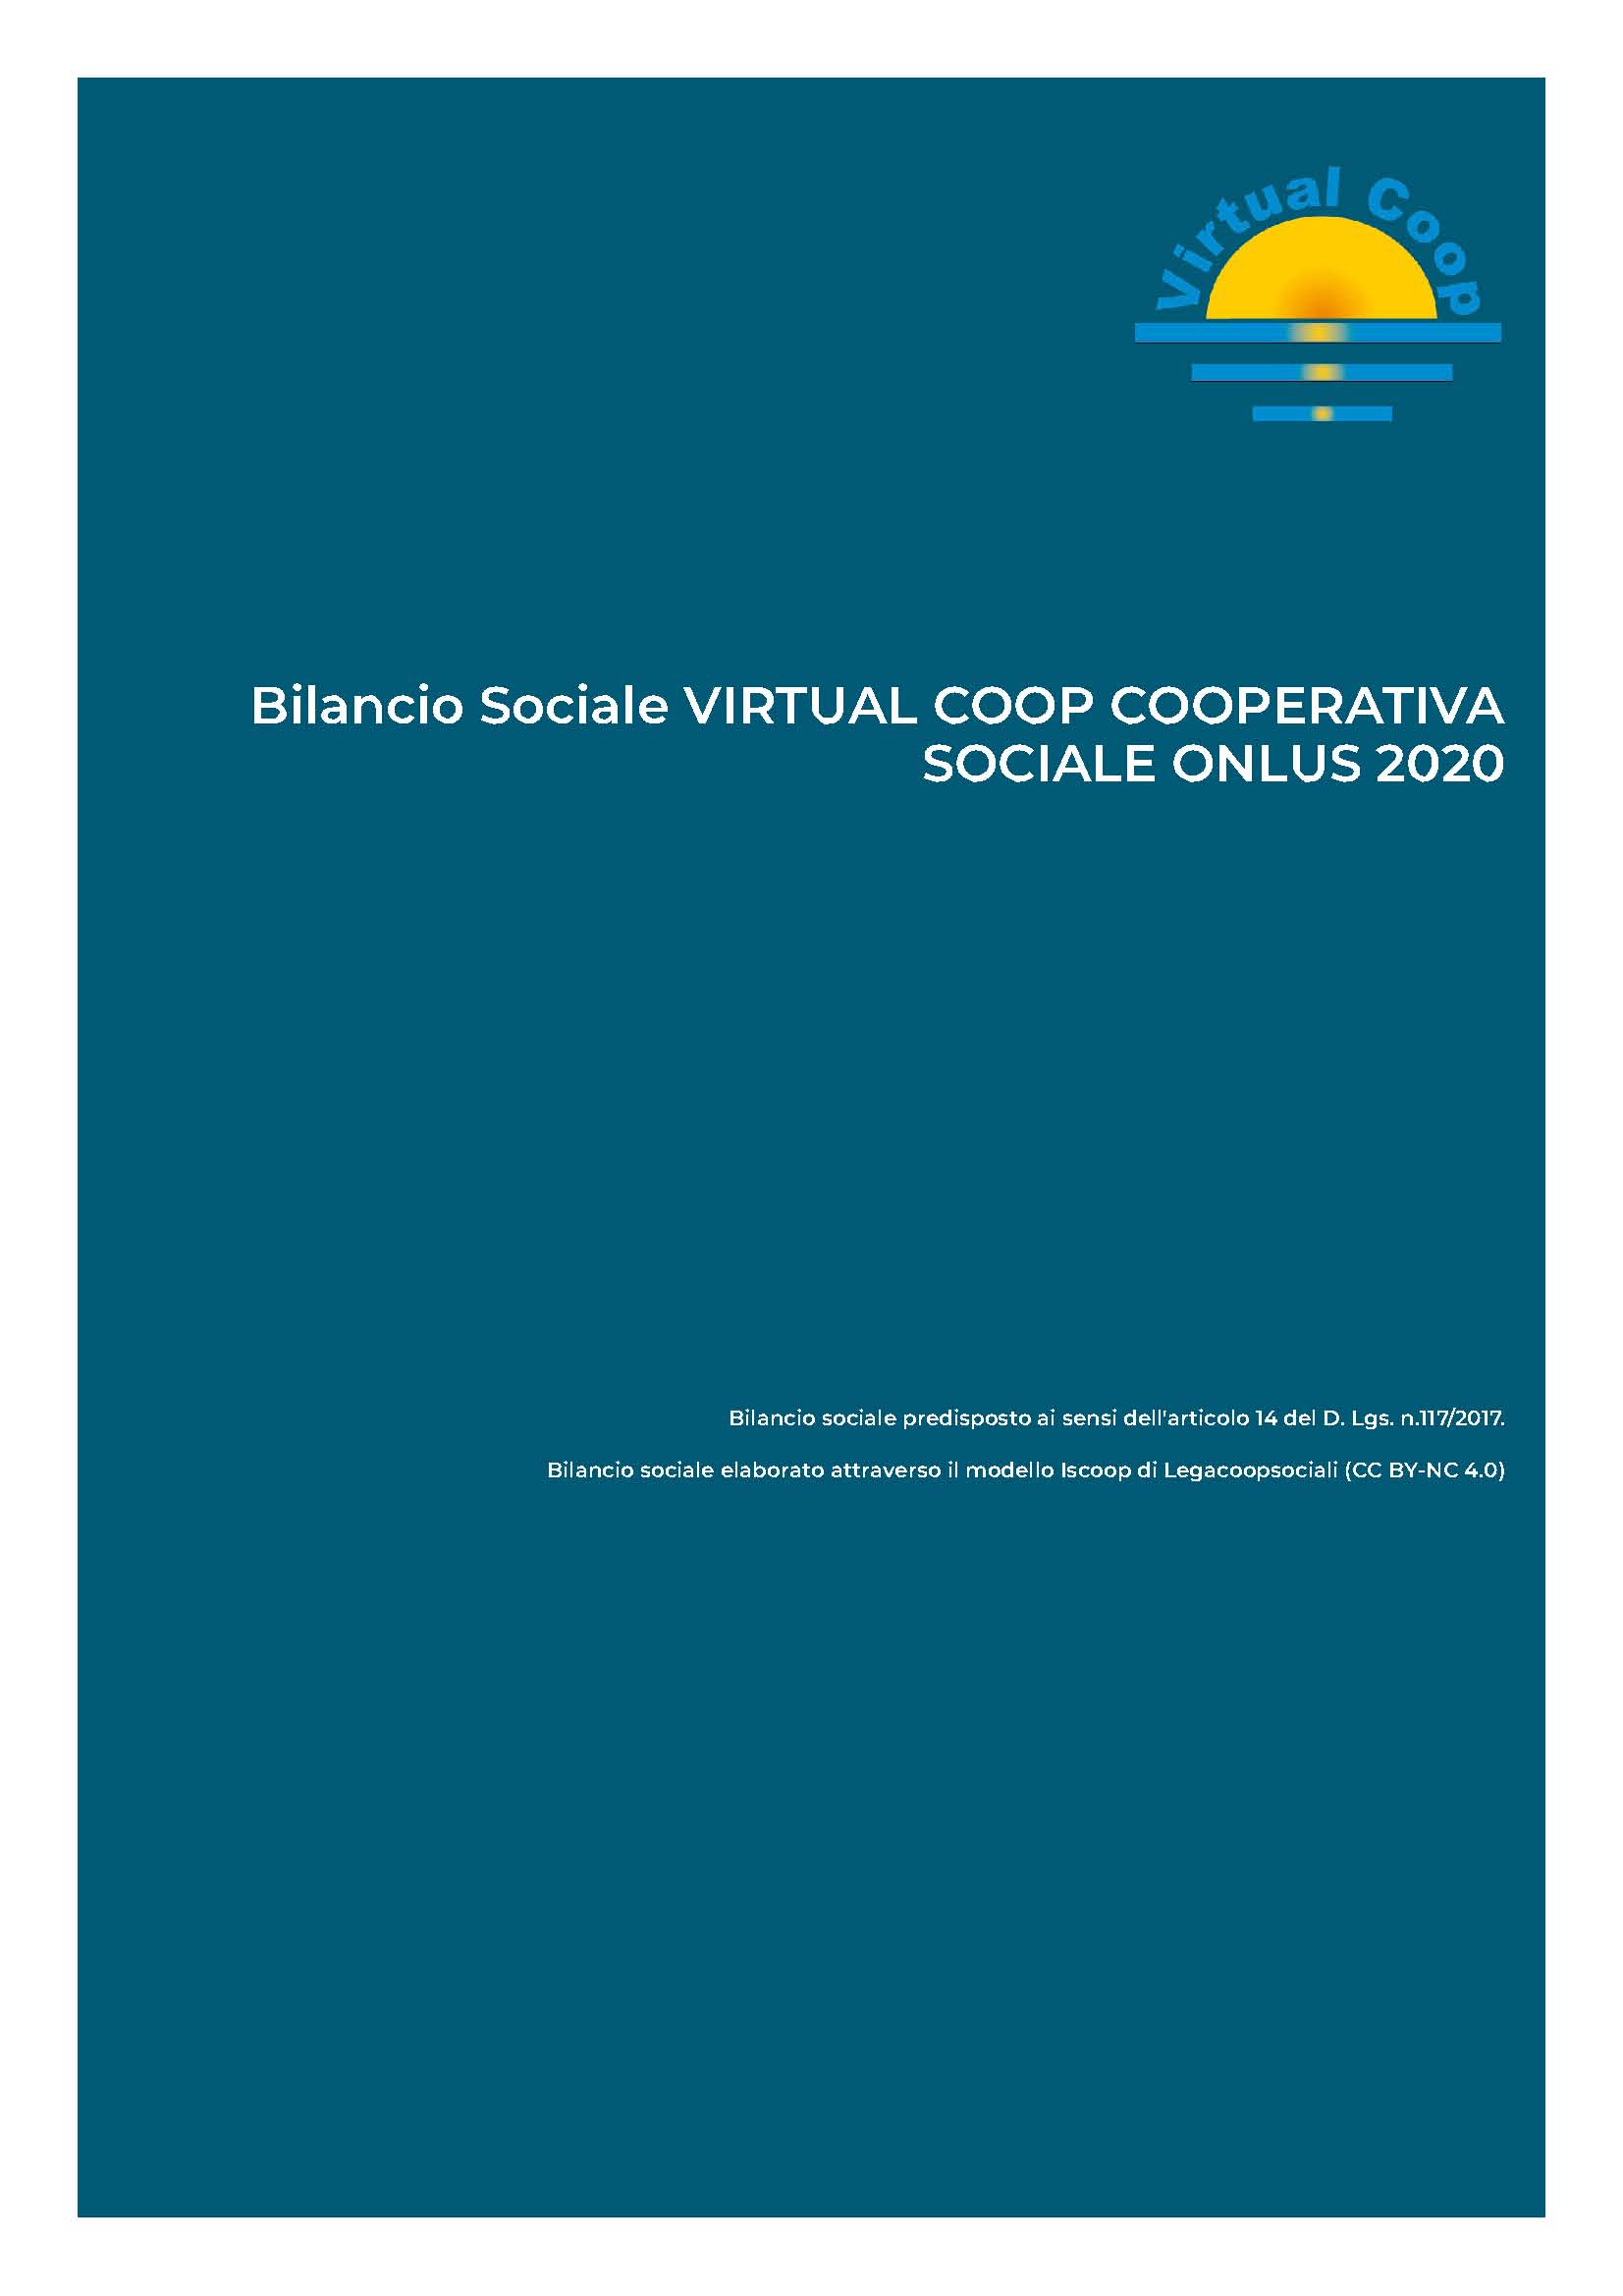 Bilancio Sociale 2020